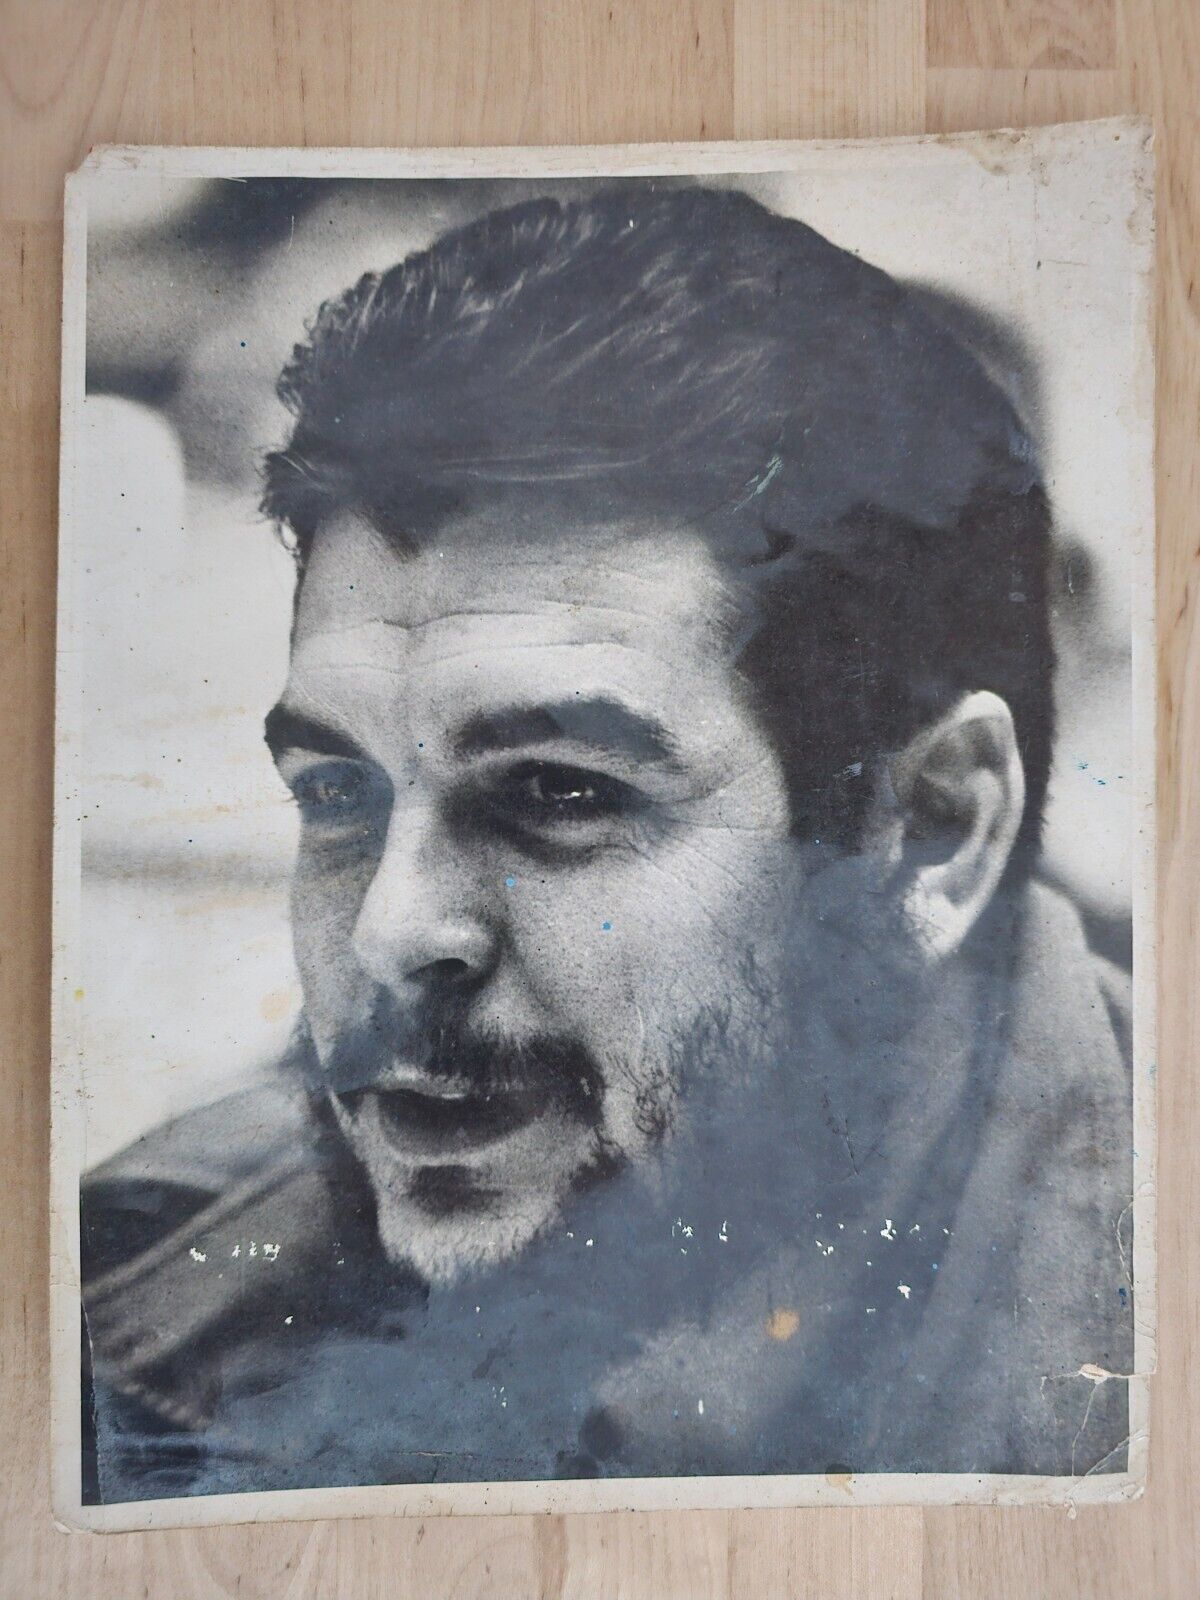 CUBA CUBAN REVOLUTION MOMENT CHE GUEVARA PORTRAIT 1960s KORDA ORIG Photo XXL